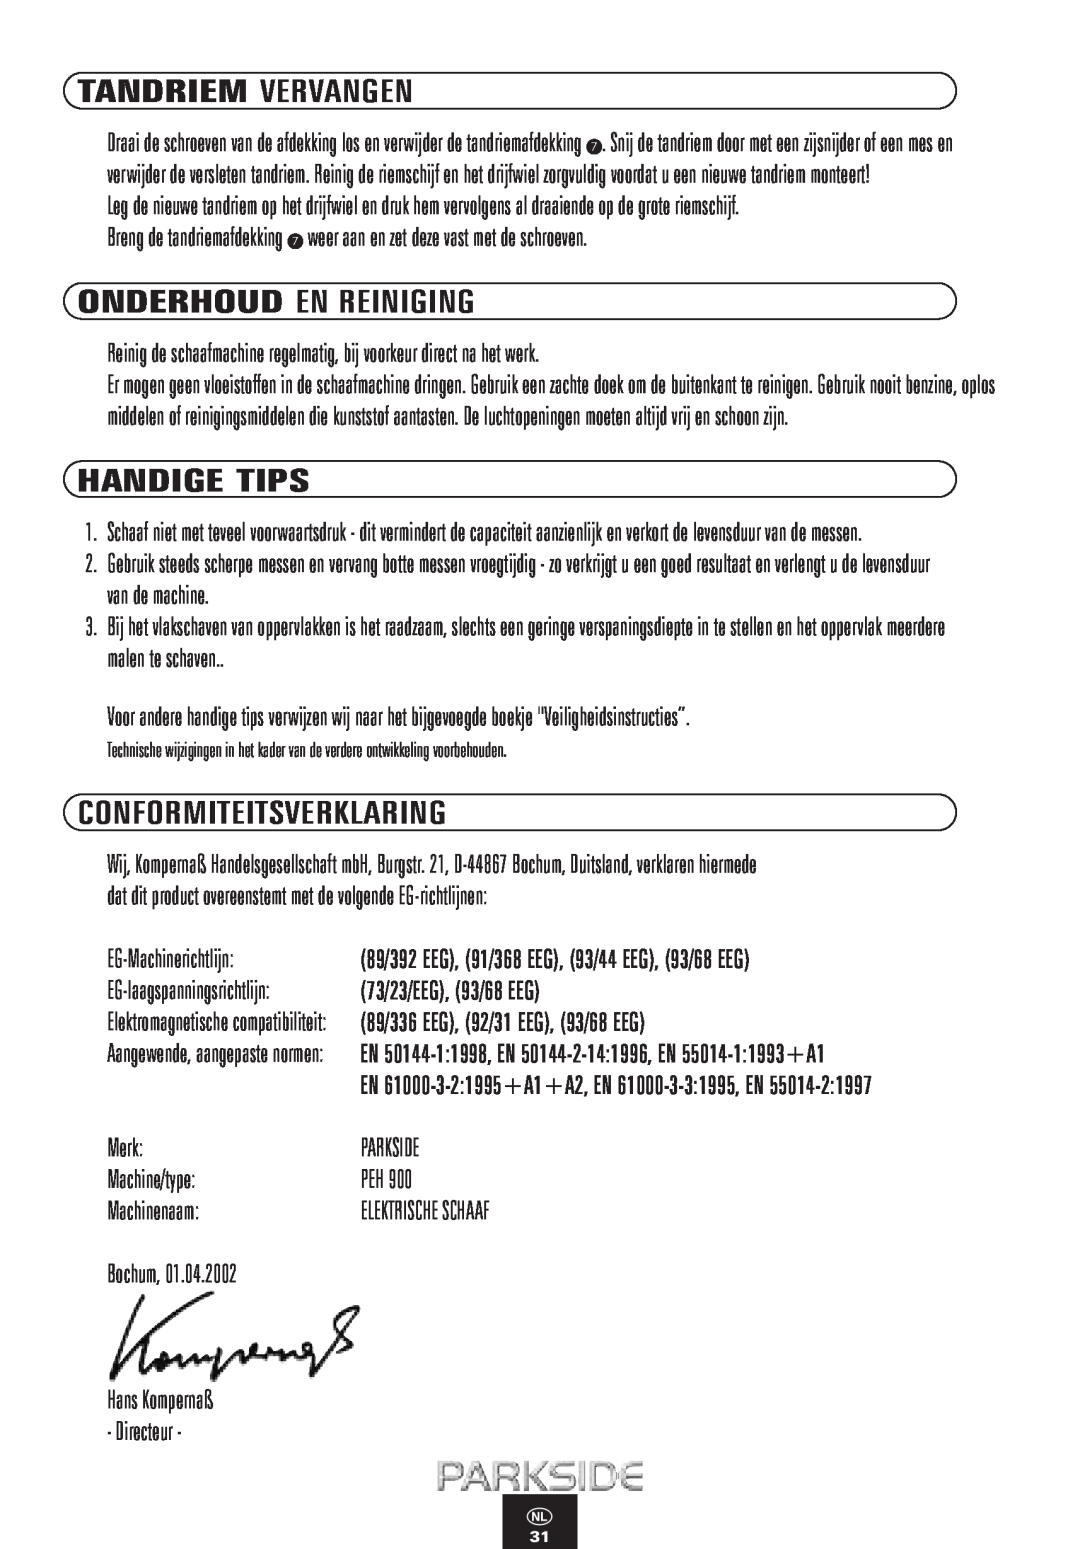 Kompernass PEH 900 manual Tandriem Vervangen, Handige Tips, Onderhoud En Reiniging, Conformiteitsverklaring 